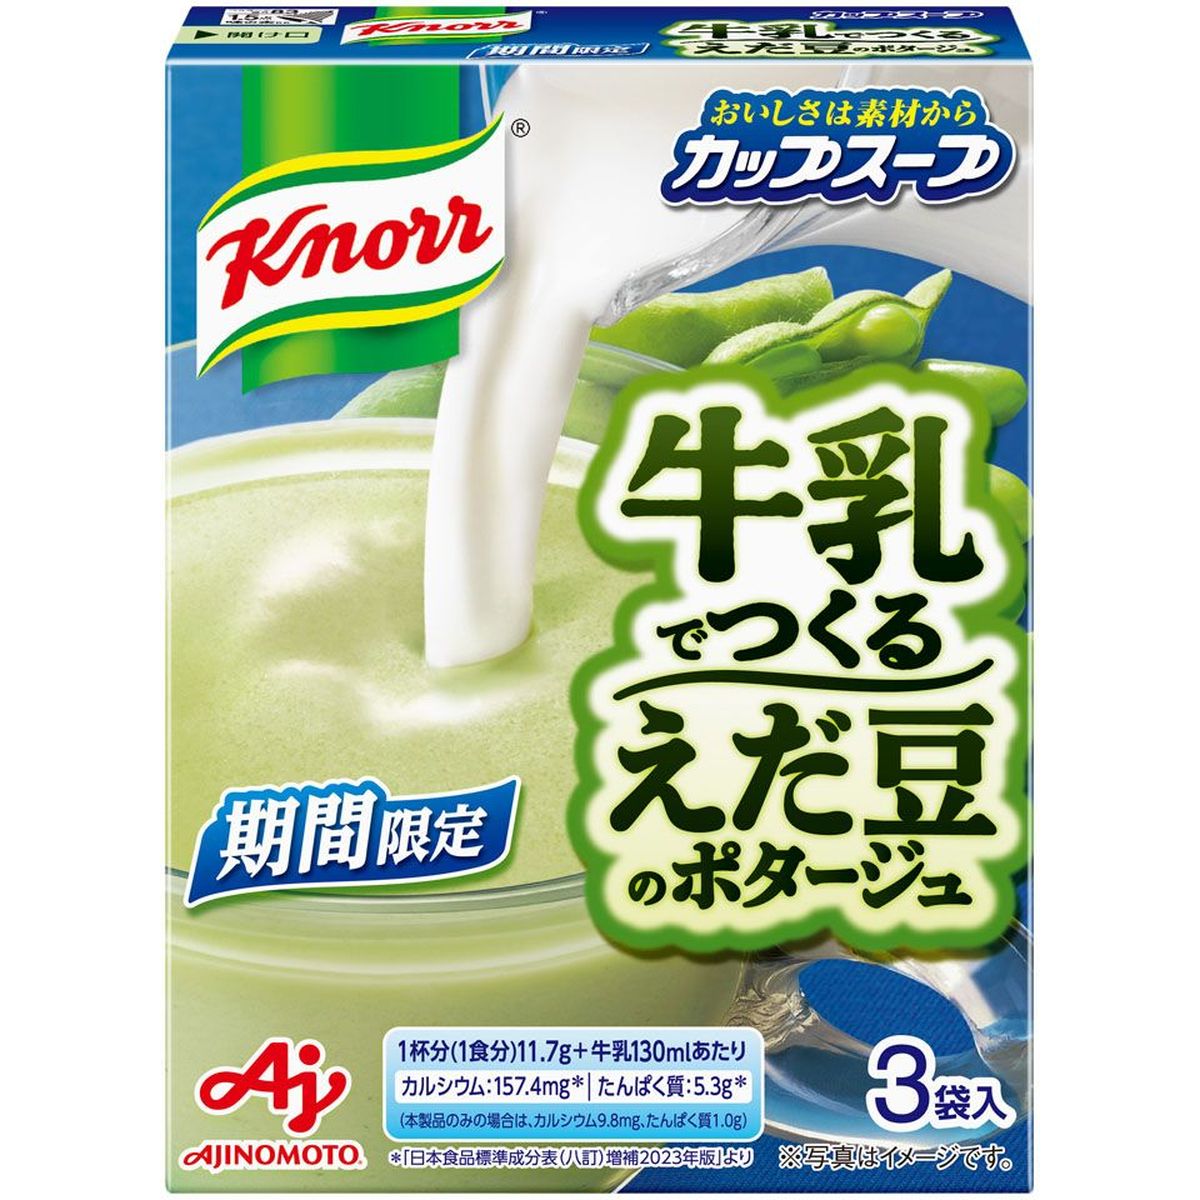 【10個入リ】味ノ素 クノール カップスープ牛乳デツクル エダ豆ノポタージュ 35.1g